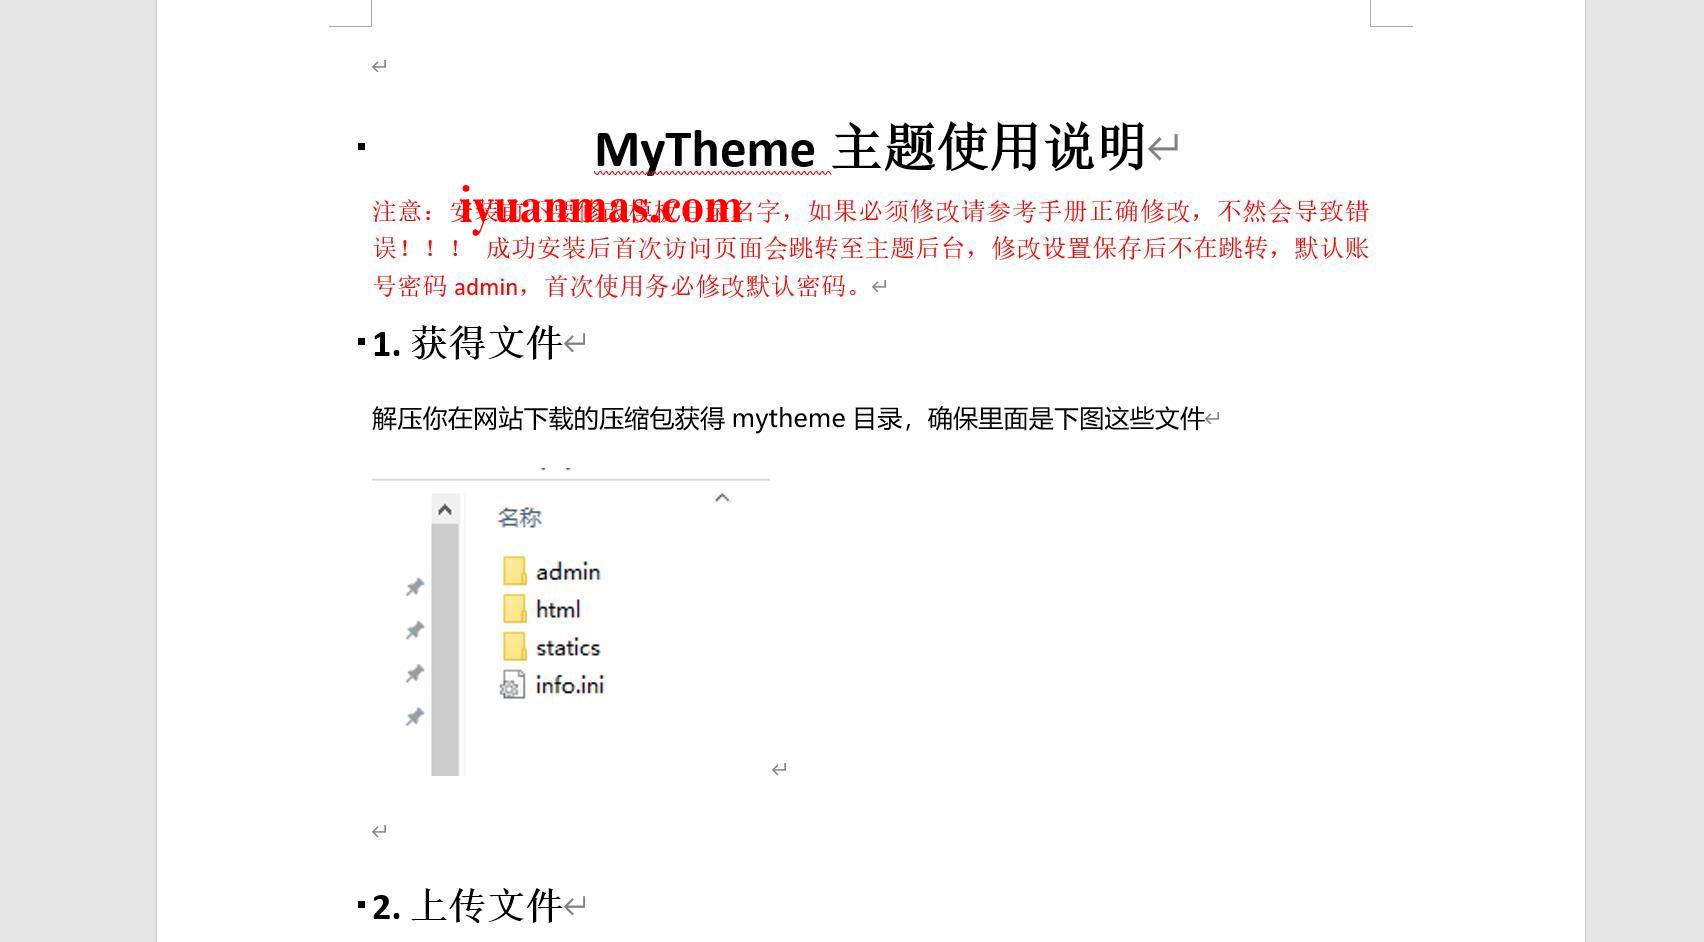 第二十六套Mytheme首涂模板免授权版 苹果CMS内核 主题模板 第2张